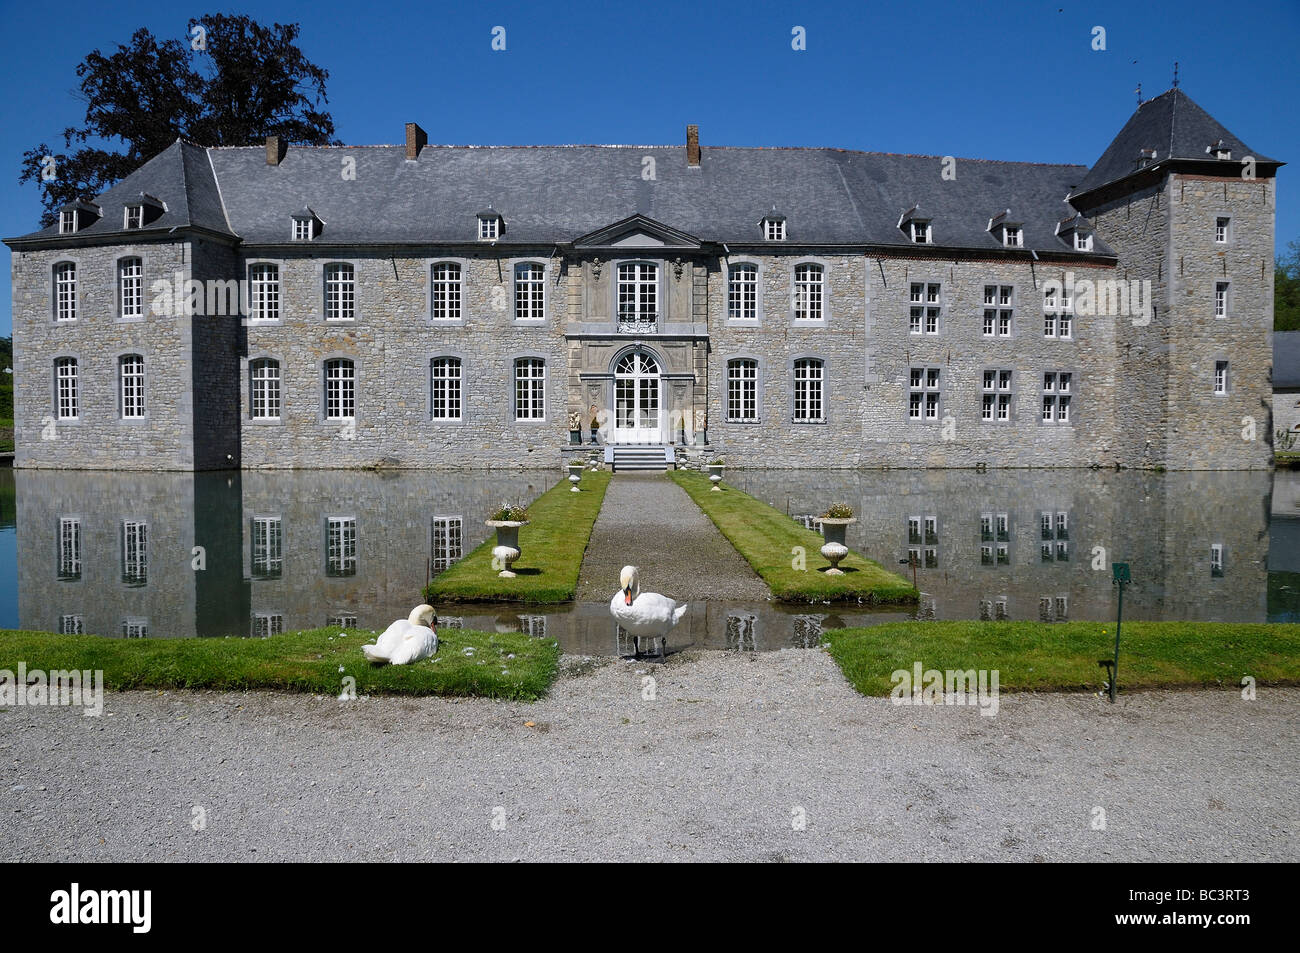 Le Chateau Au Centre De L Jardins D Annevoie Les Jardins D Eau Pres De Namur Et Dinant Dans La Region Wallonne Belgique Photo Stock Alamy